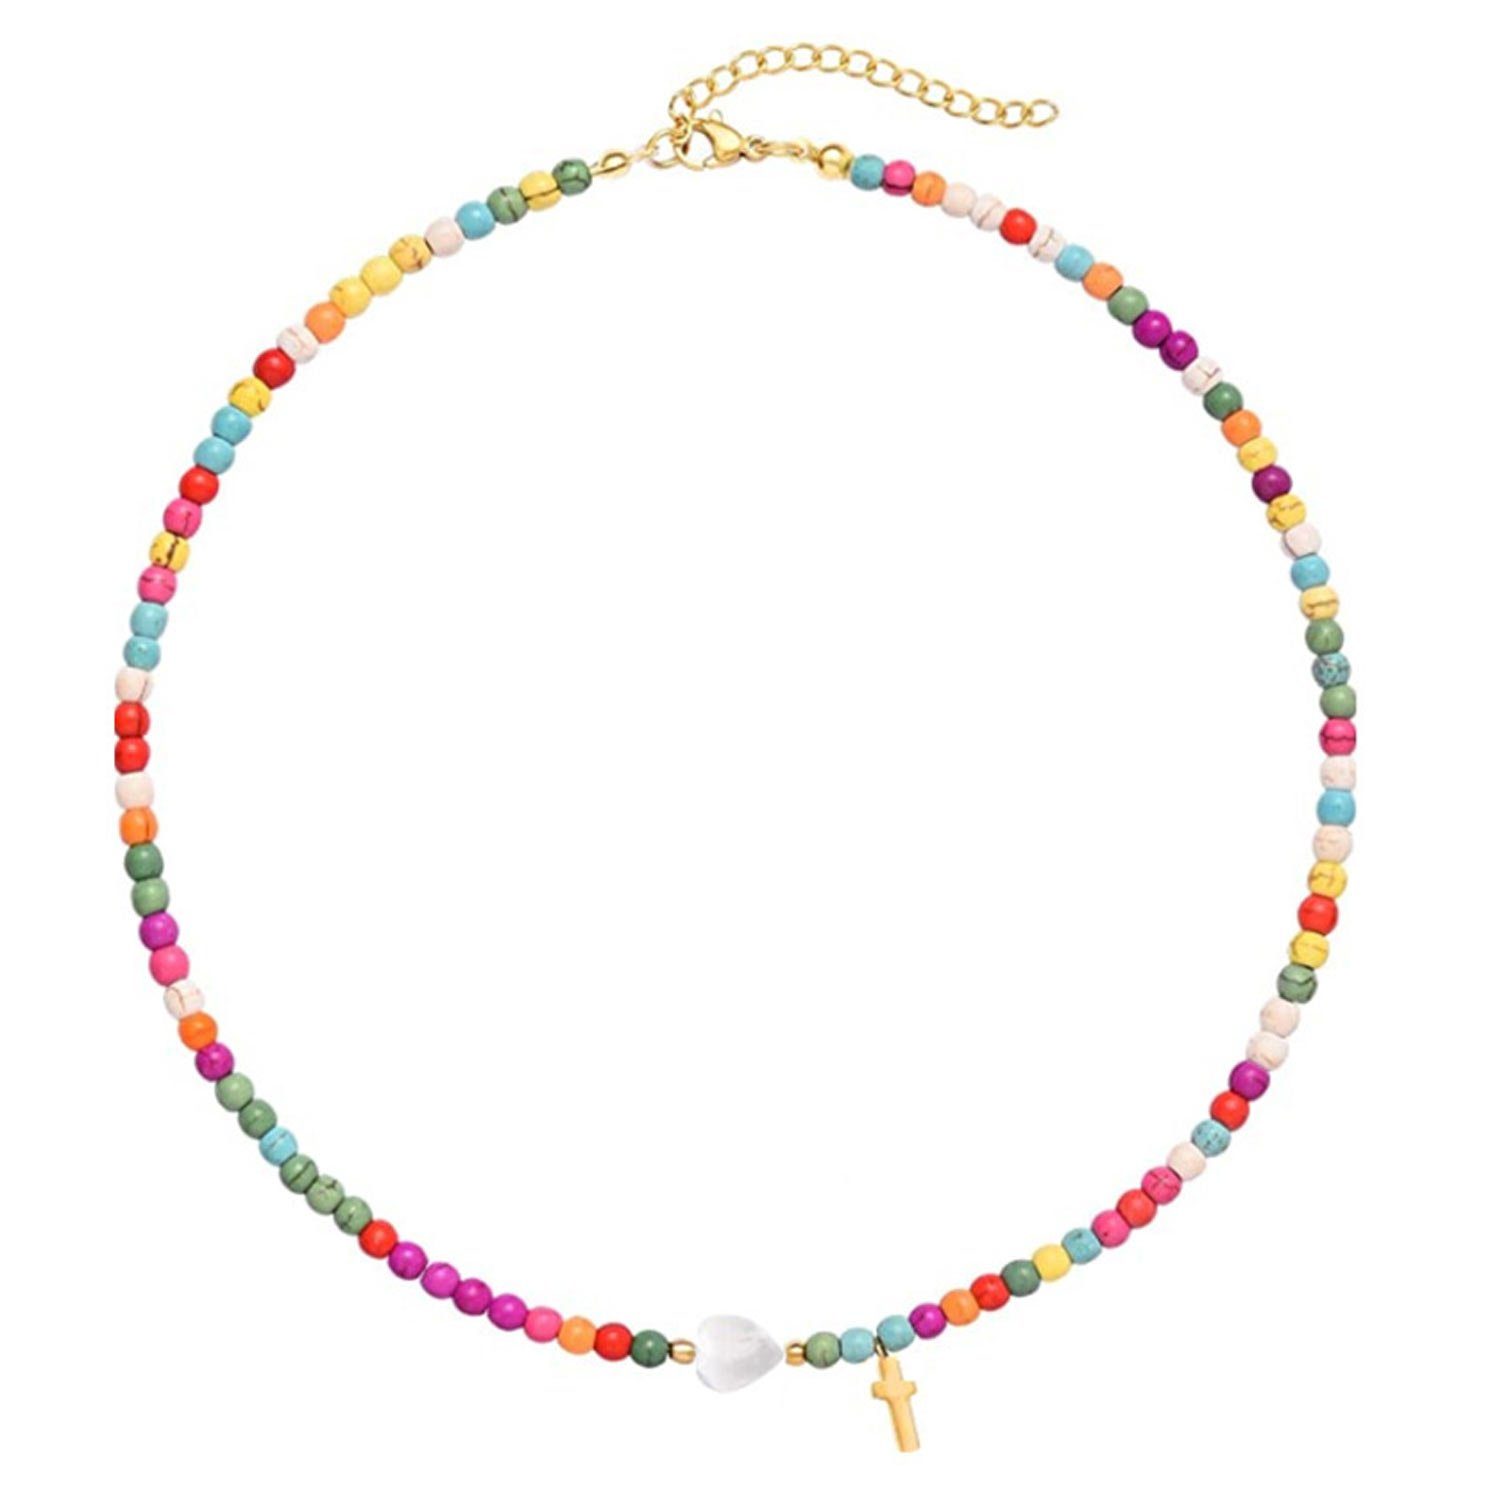 MAGICSHE Perlenkette Süßwasserperlen Layered Halskette Halskette für aus NK8038 Edelstahl Frauen, vergoldet 18K